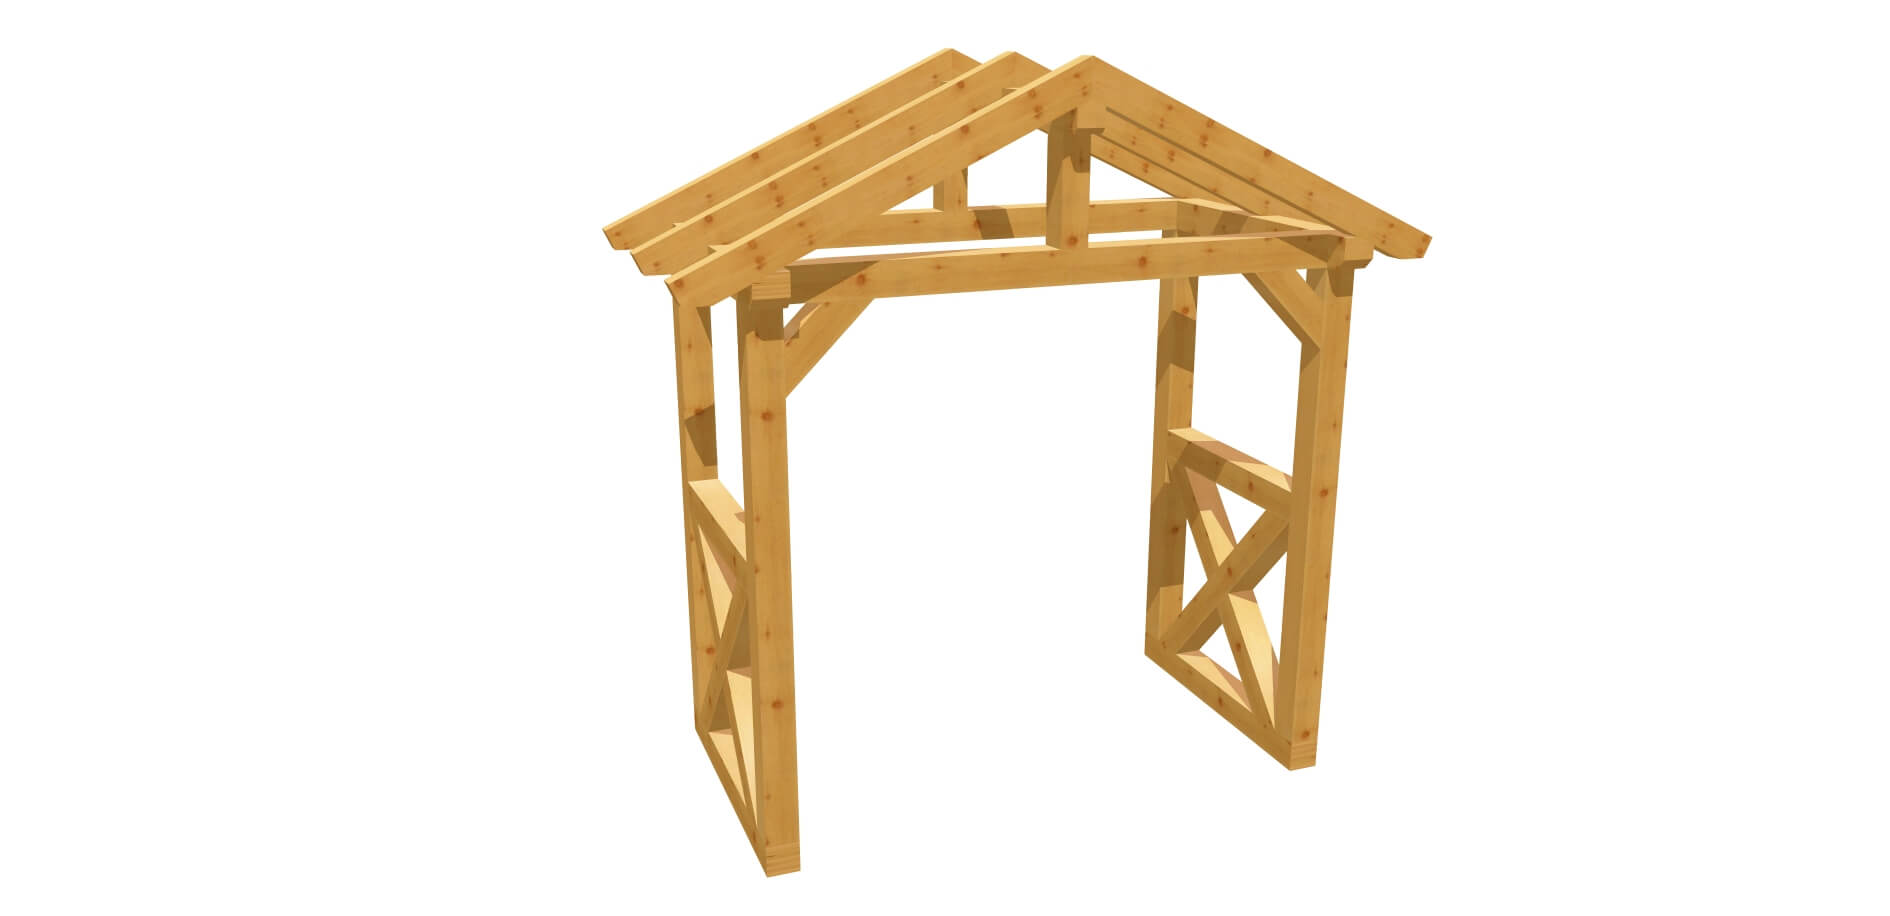 Bauplan Haustür Vordach Holz 2m x 2,24m